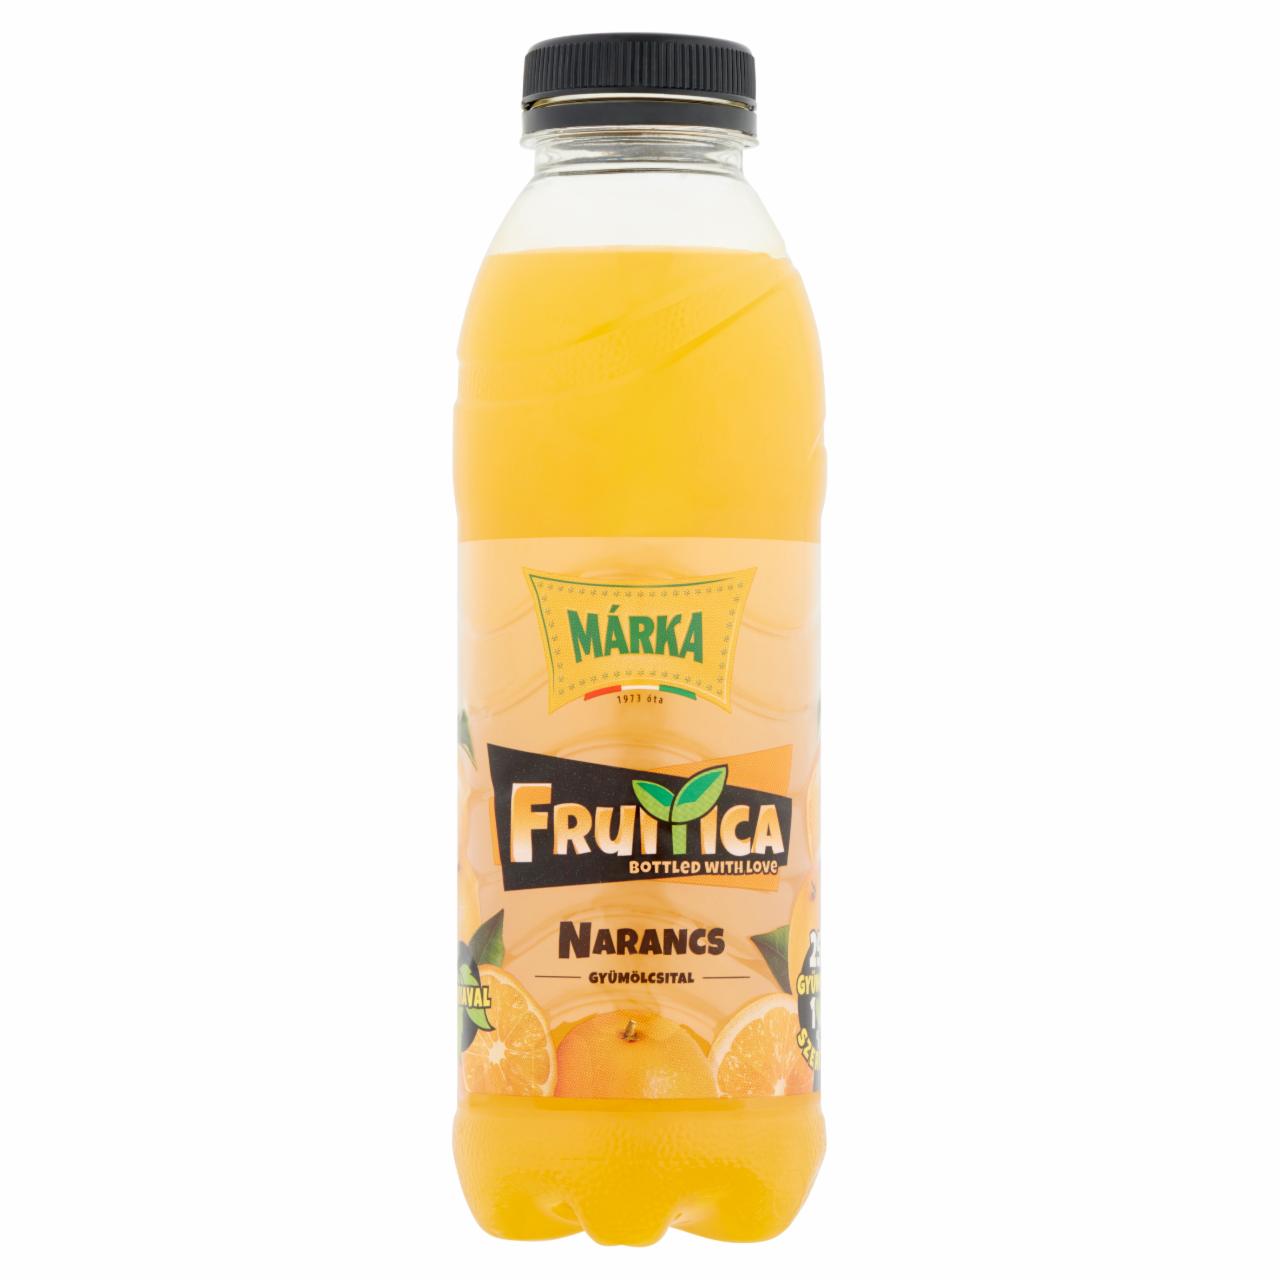 Képek - Márka Fruitica narancs szénsavmentes gyümölcsital cukorral és természetes édesítőszerrel 0,5 l